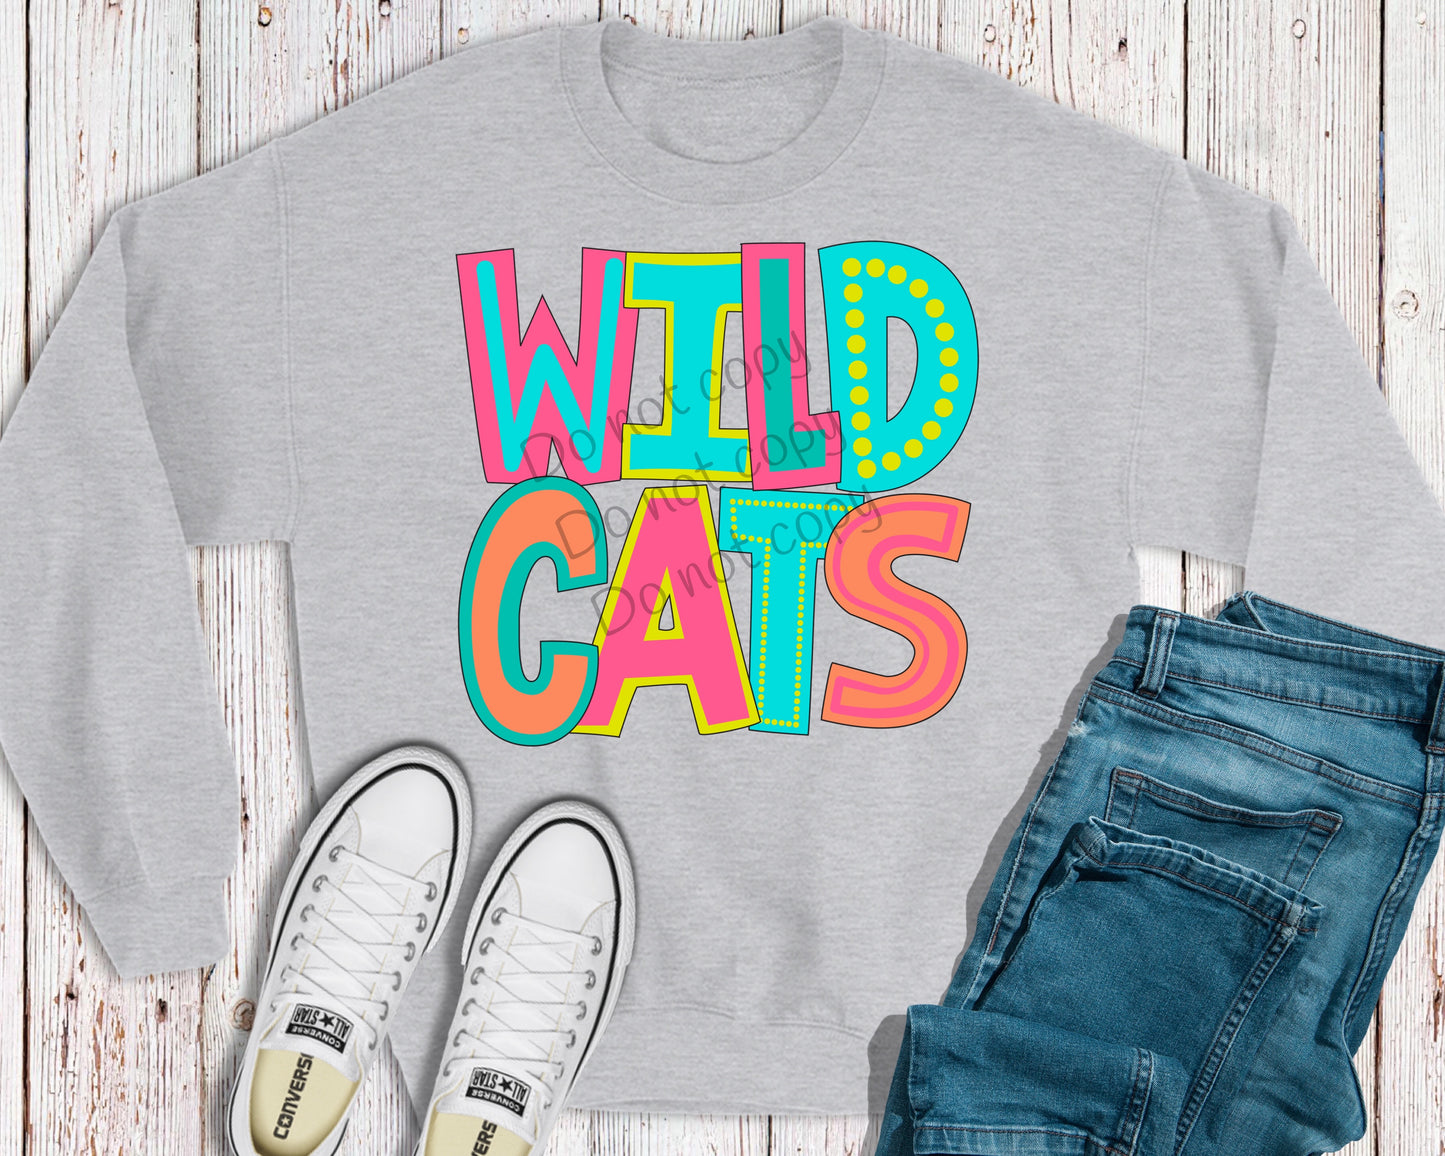 Wildcats-DTF